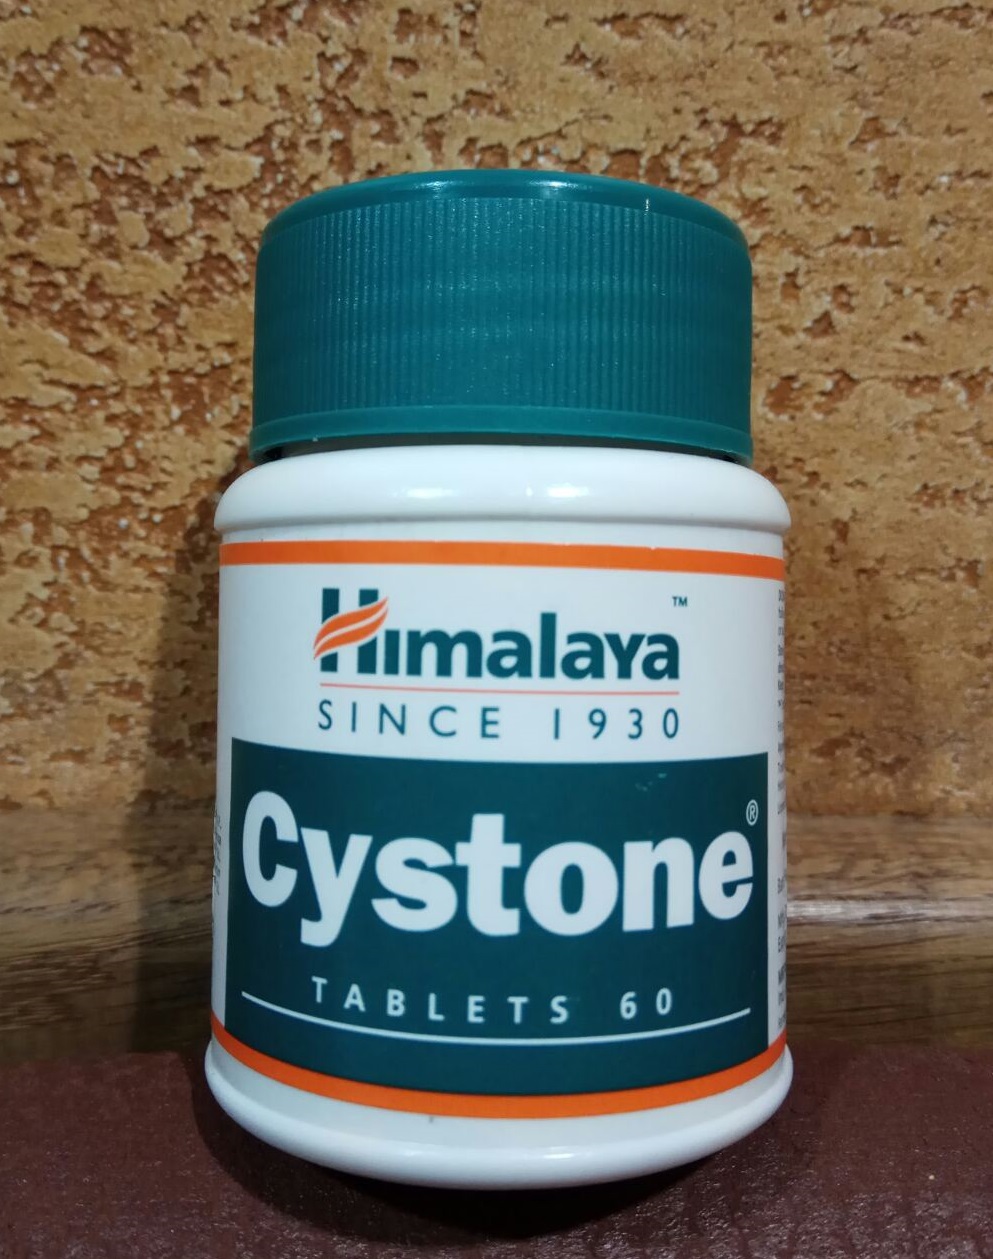 Cystone 60 Цистон табл Himalaya мочеполовая система, аюрведа, инфекции, цистит, уретрит, подагра, Индия ОРИГИНАЛ